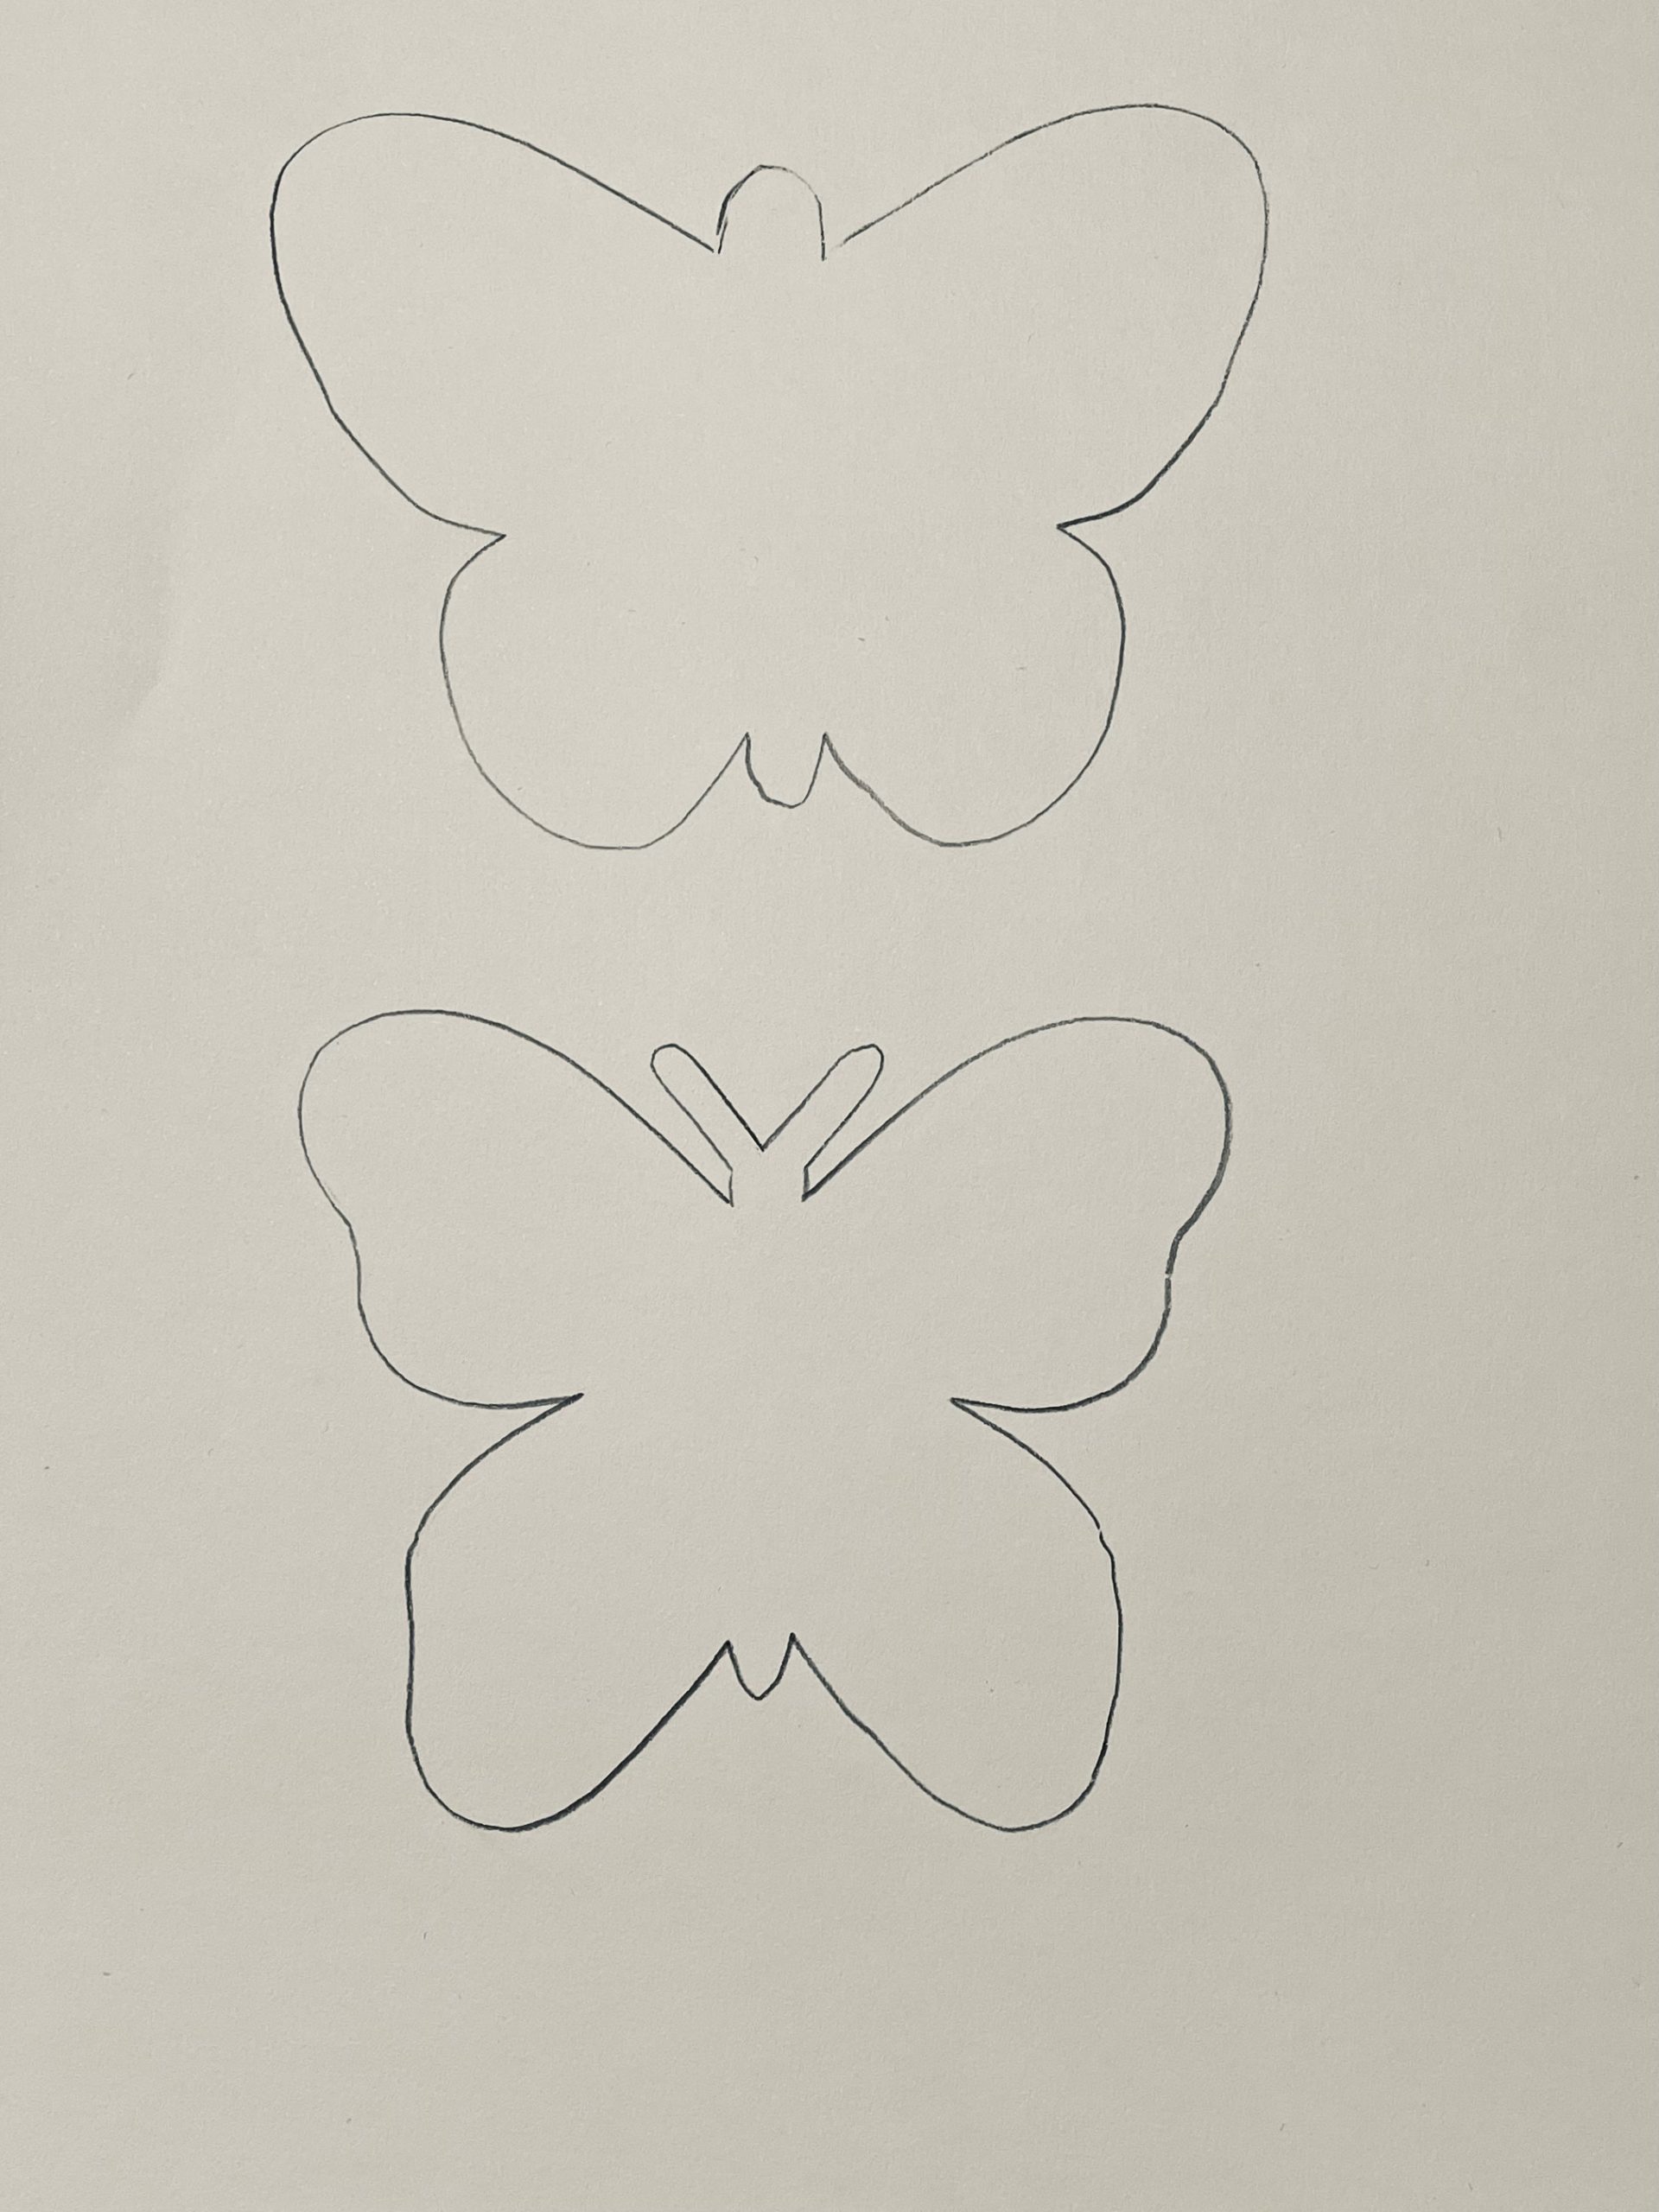 Bild zum Schritt 2 für das Bastel- und DIY-Abenteuer für Kinder: 'Jetzt malt ihr euch eine Schmetterlingsschablone oder ihr druckt euch...'